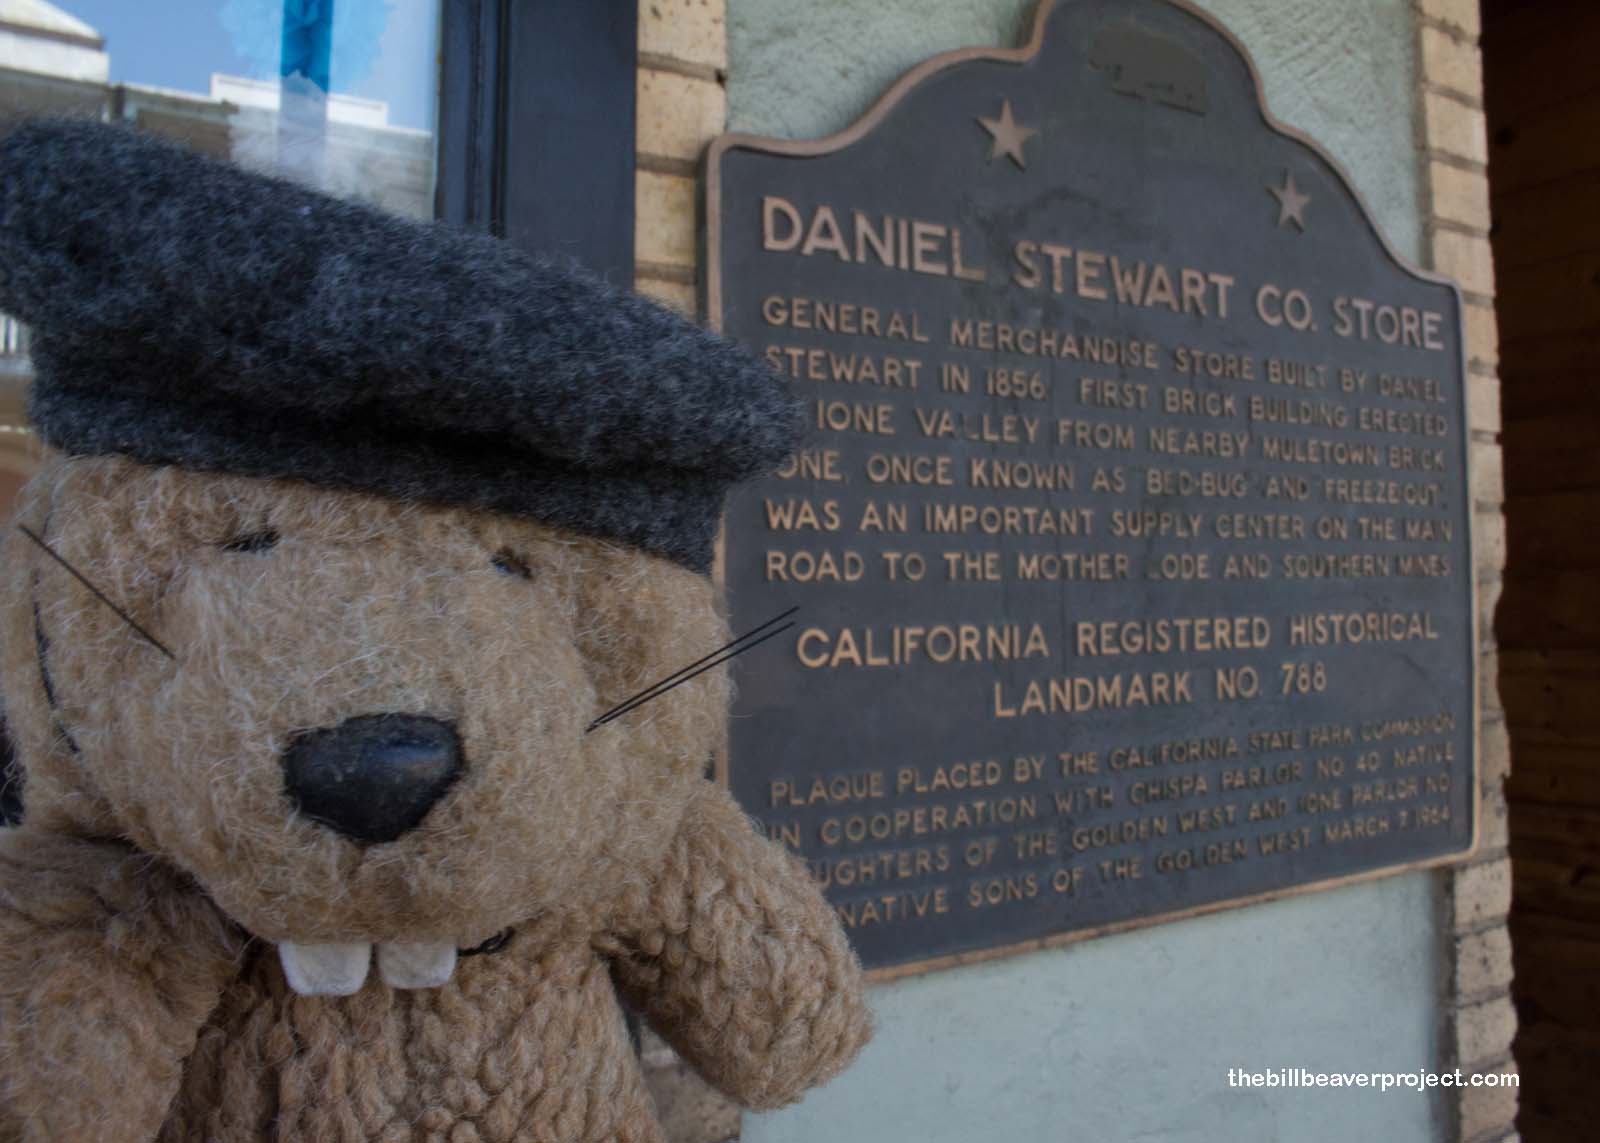 Daniel Stewart Co. Store